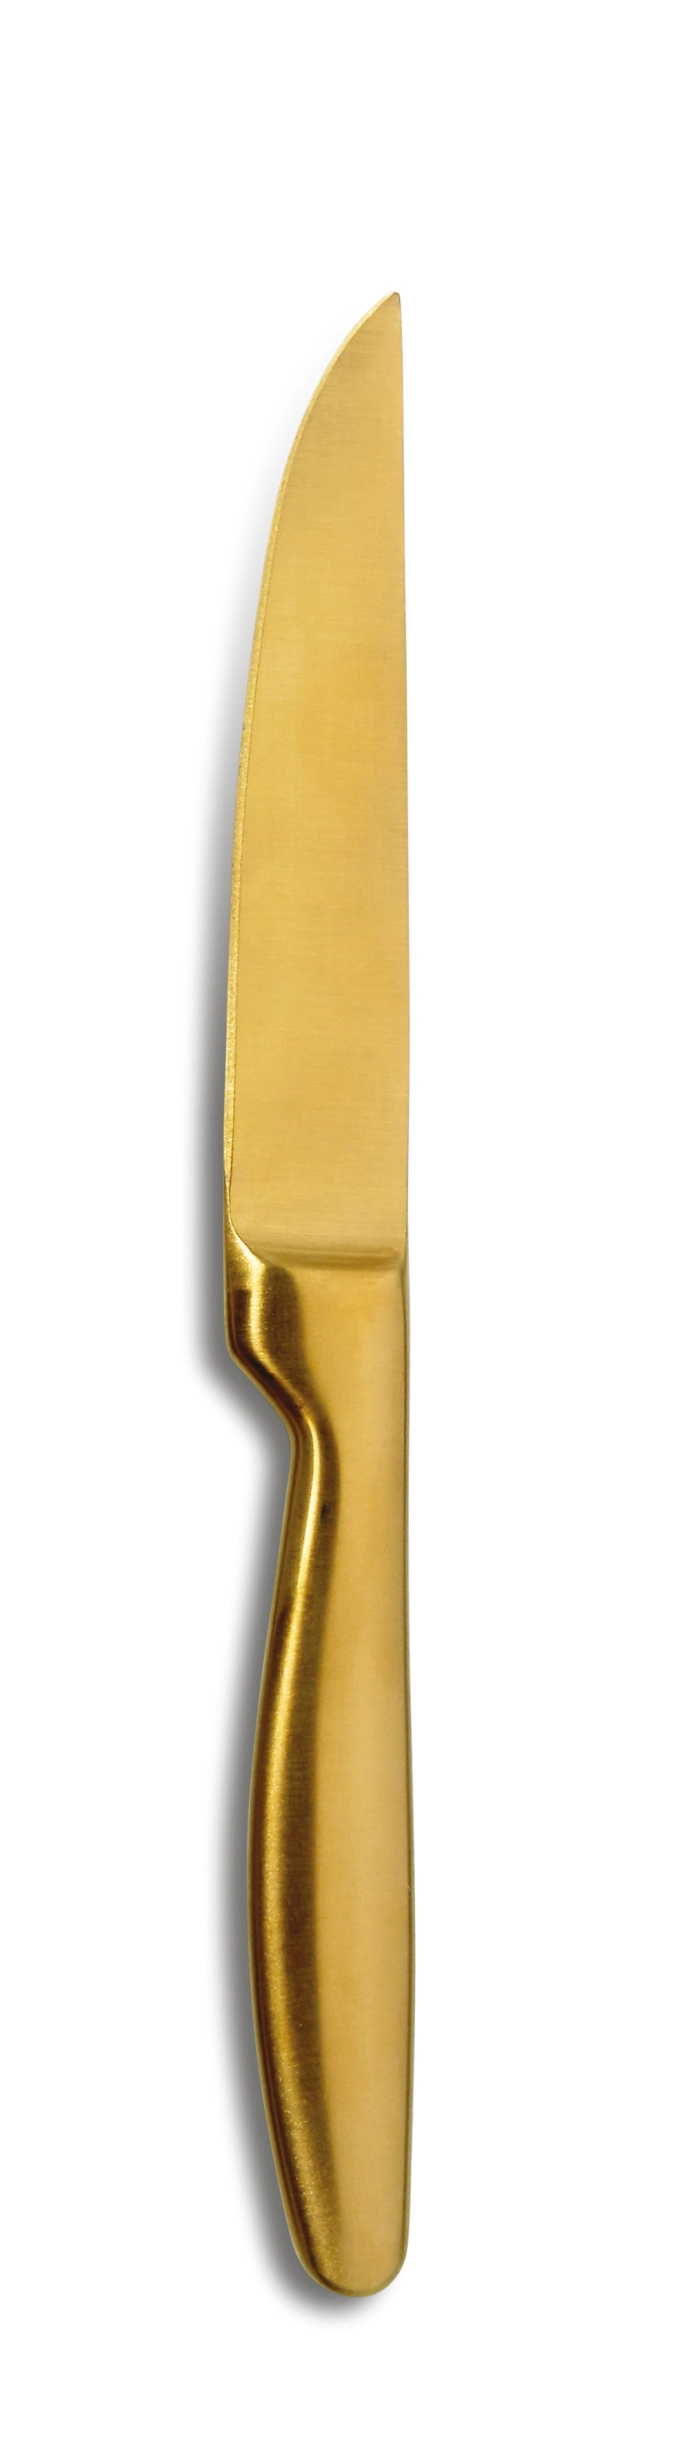 Steakmesser BOJ / K6 Gold, ungezahnt